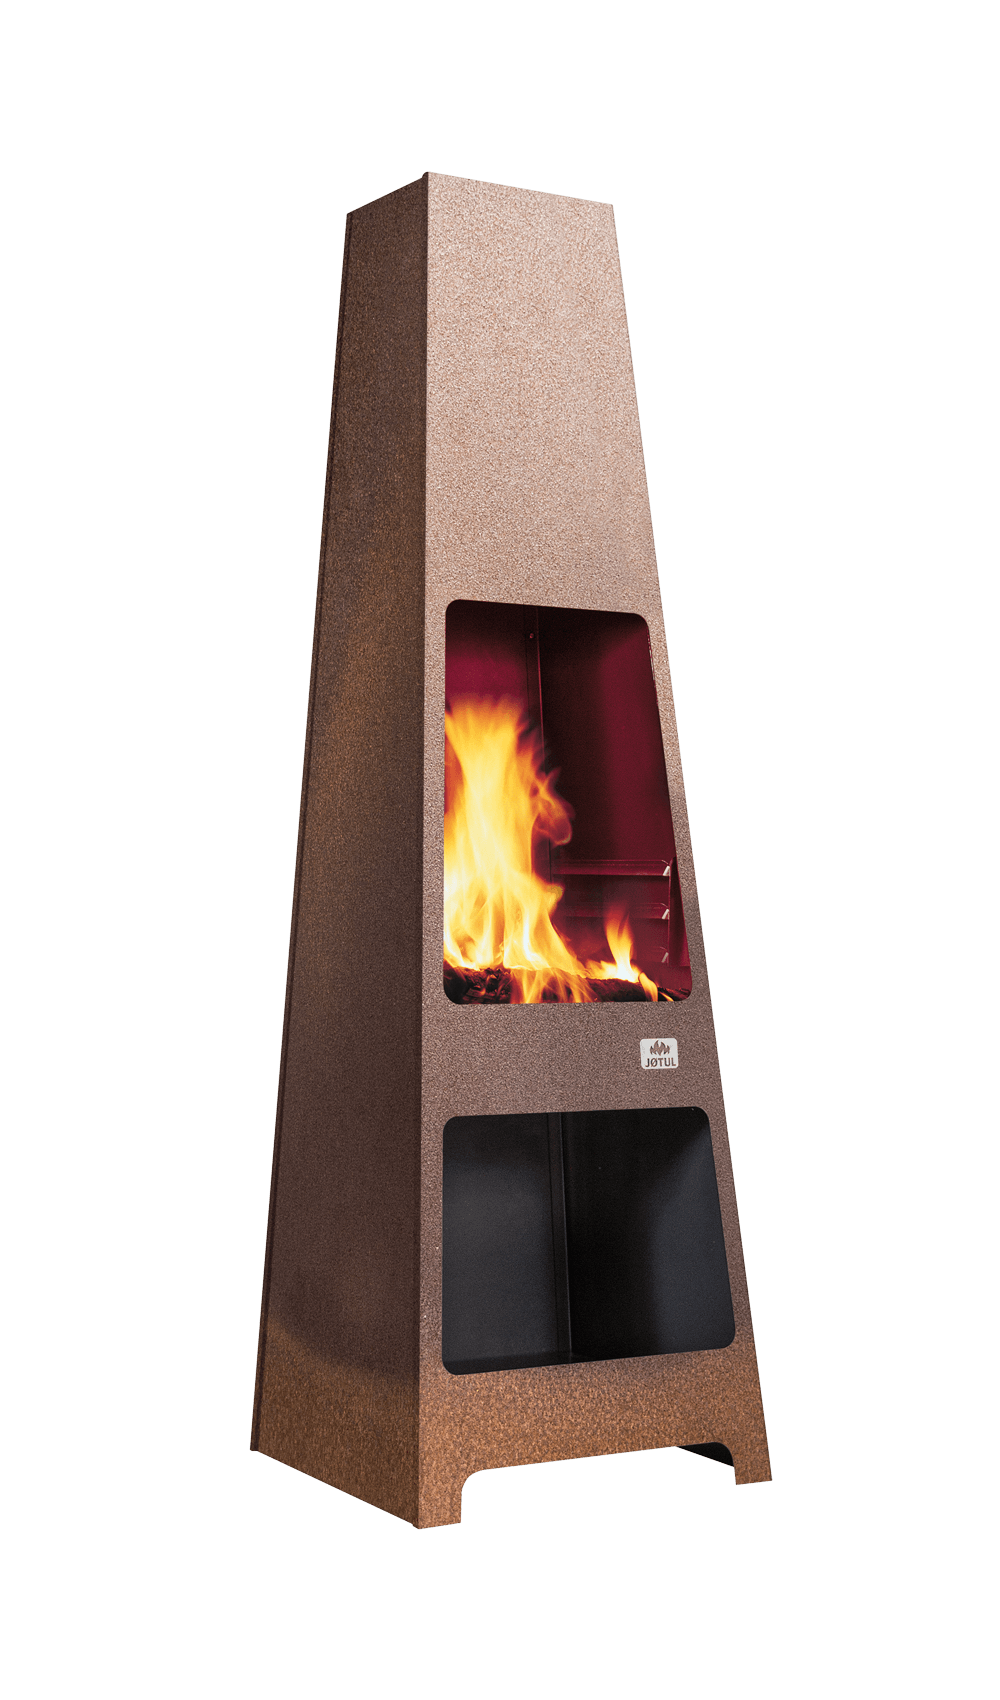 Jøtul Loke Outdoor Wood Fireplace